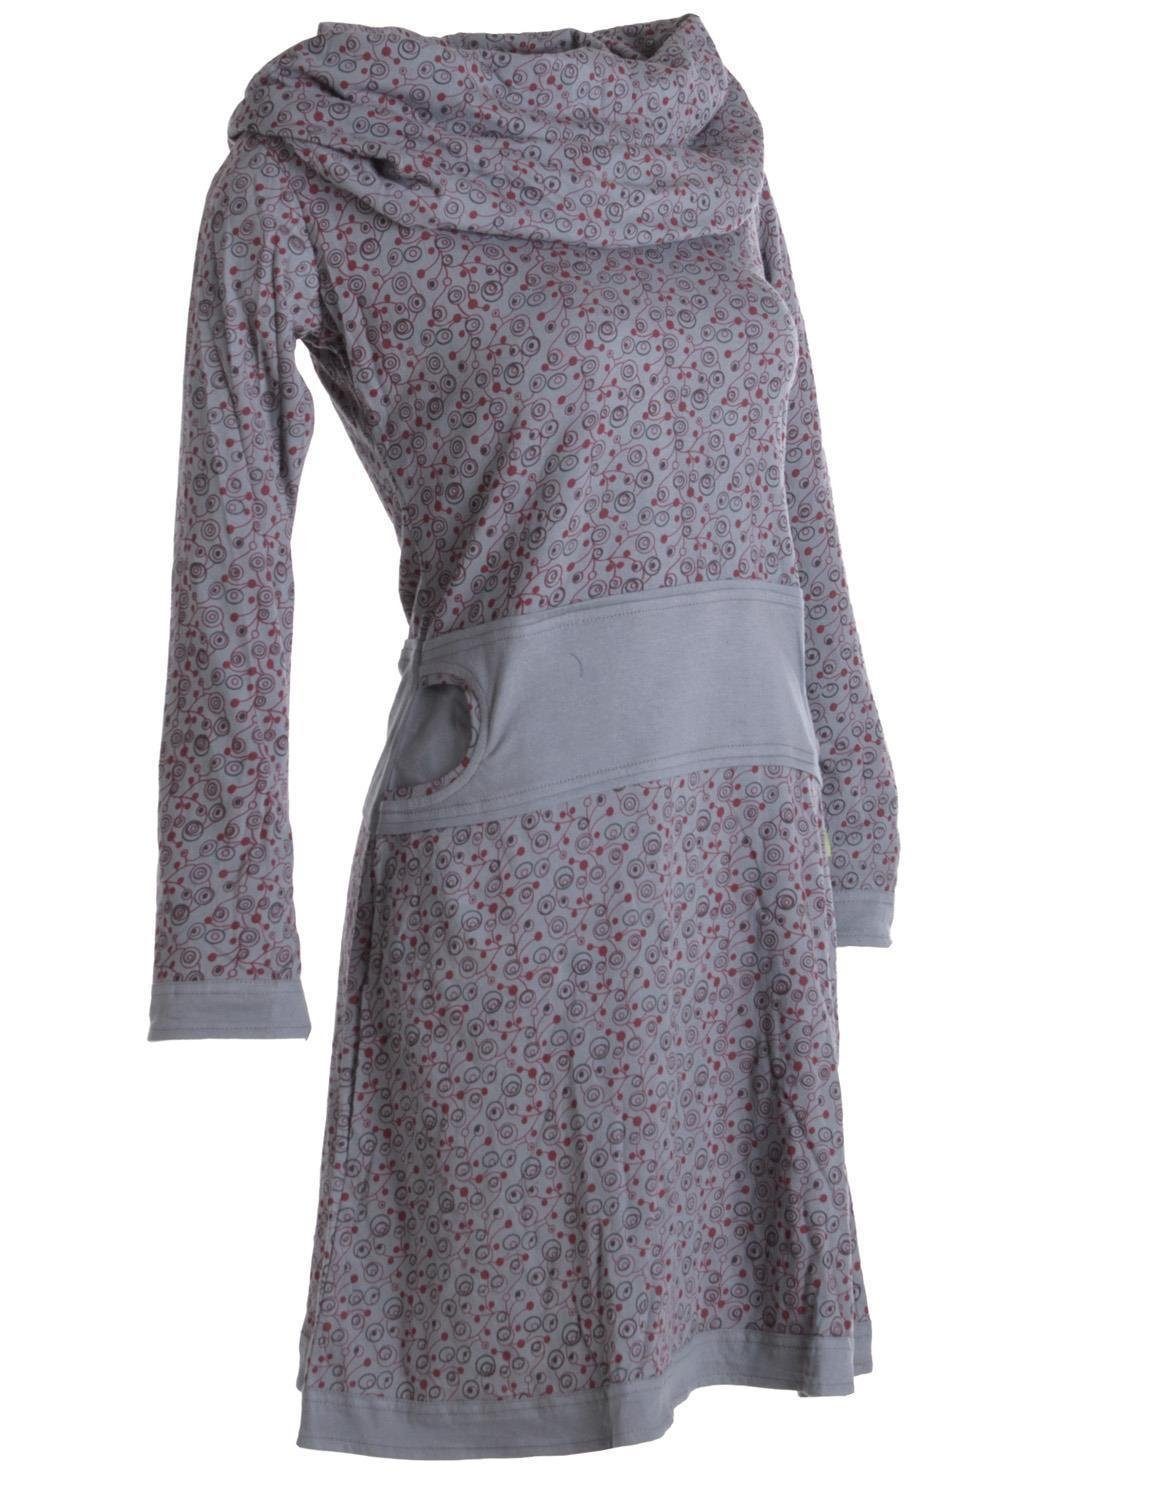 Boho, Kleid aus Ethno, Hippie Bedrucktes Goa, grau Baumwolle Jerseykleid Style Vishes mit Schalkragen